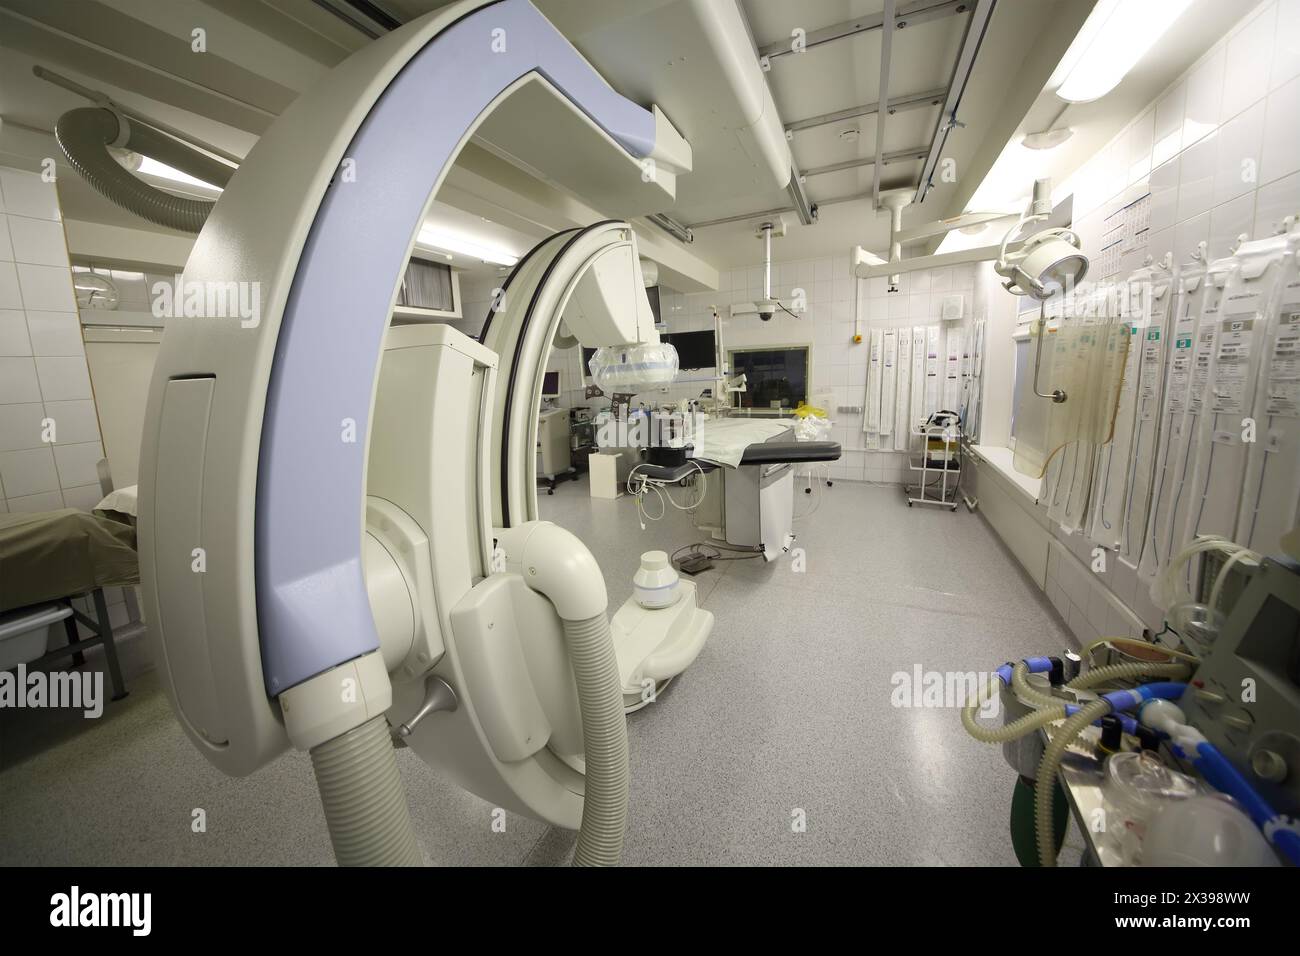 RUSSLAND, MOSKAU - 09. JAN, 2015: Moderne angiographische Installation mit Opeartiertisch im Krankenhaus. Stockfoto